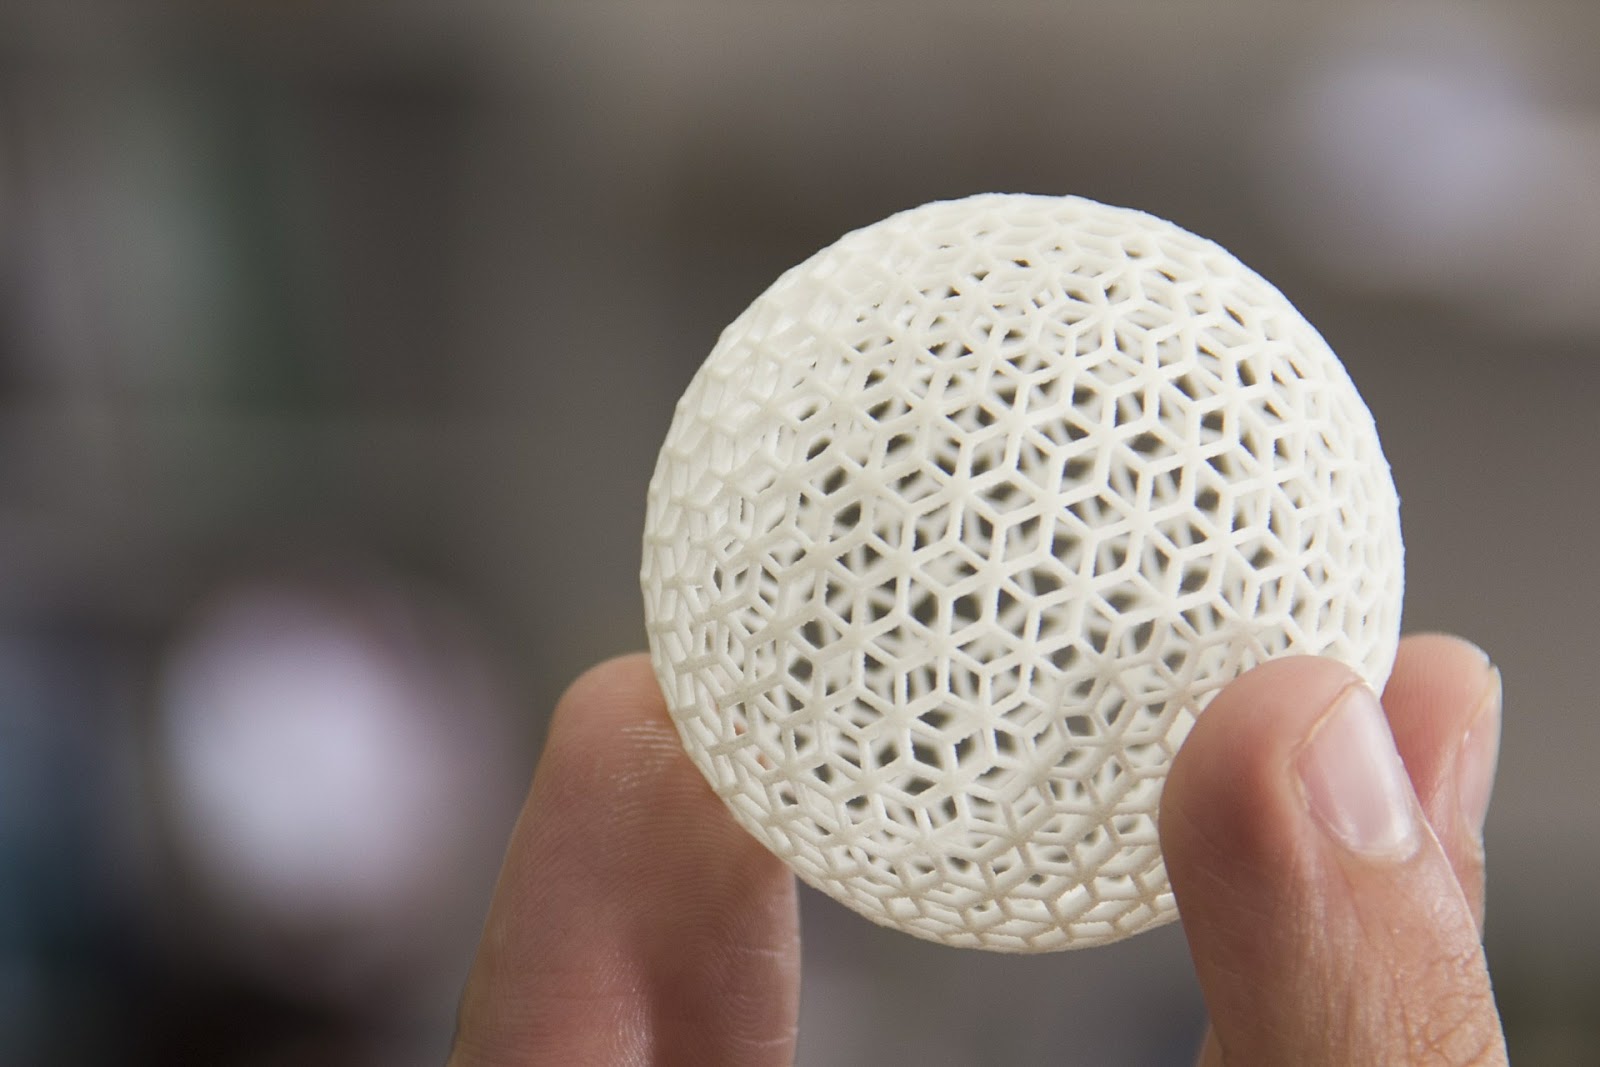 Geometria de esfera complexa produzida por impressão 3D